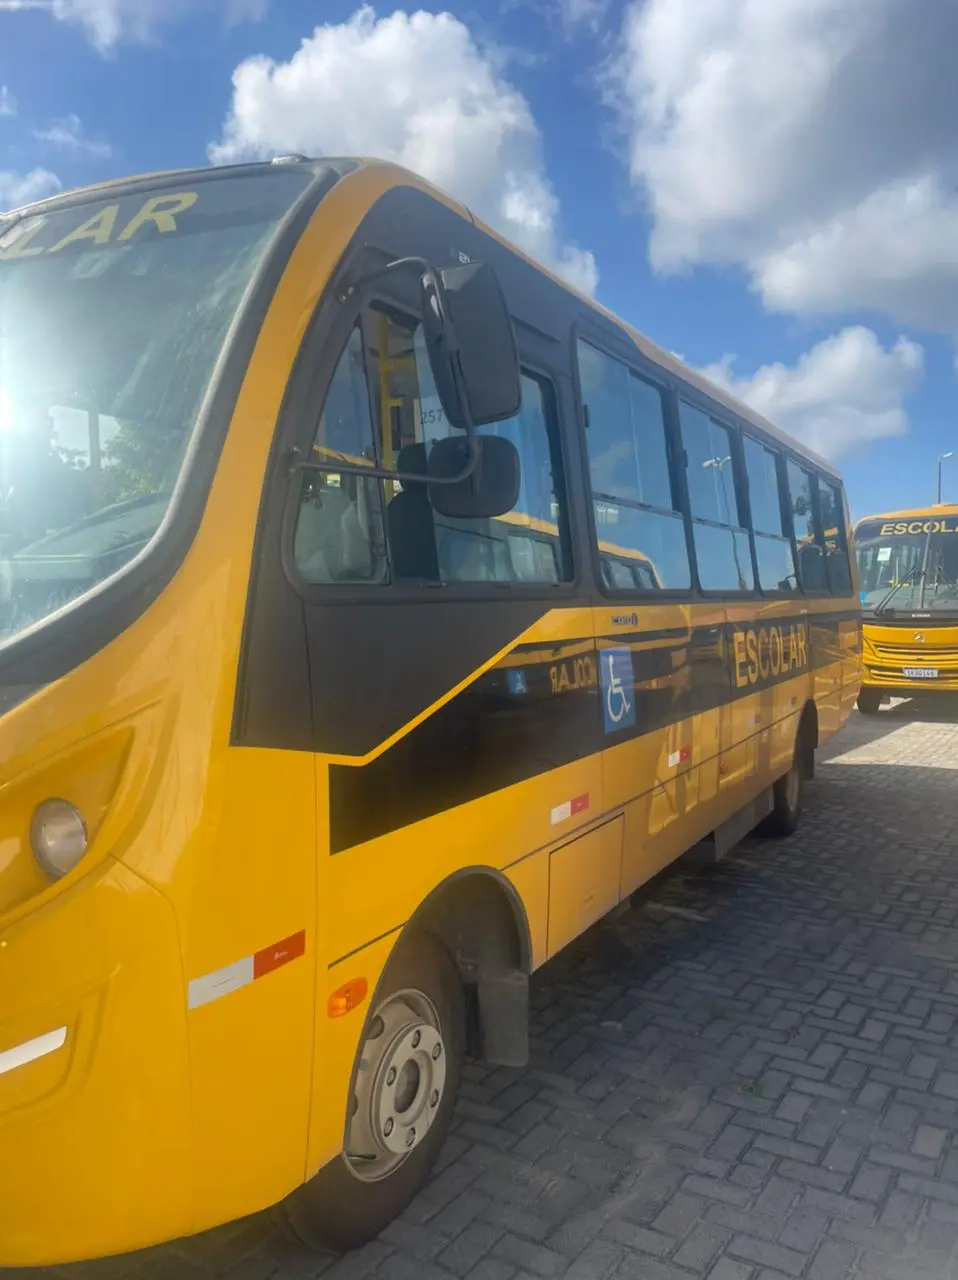 CB921FEE-F11A-4DBC-AE11-3B9181CB0C4C Prefeito Márcio Leite consegue mais um ônibus para educação de São João do Tigre